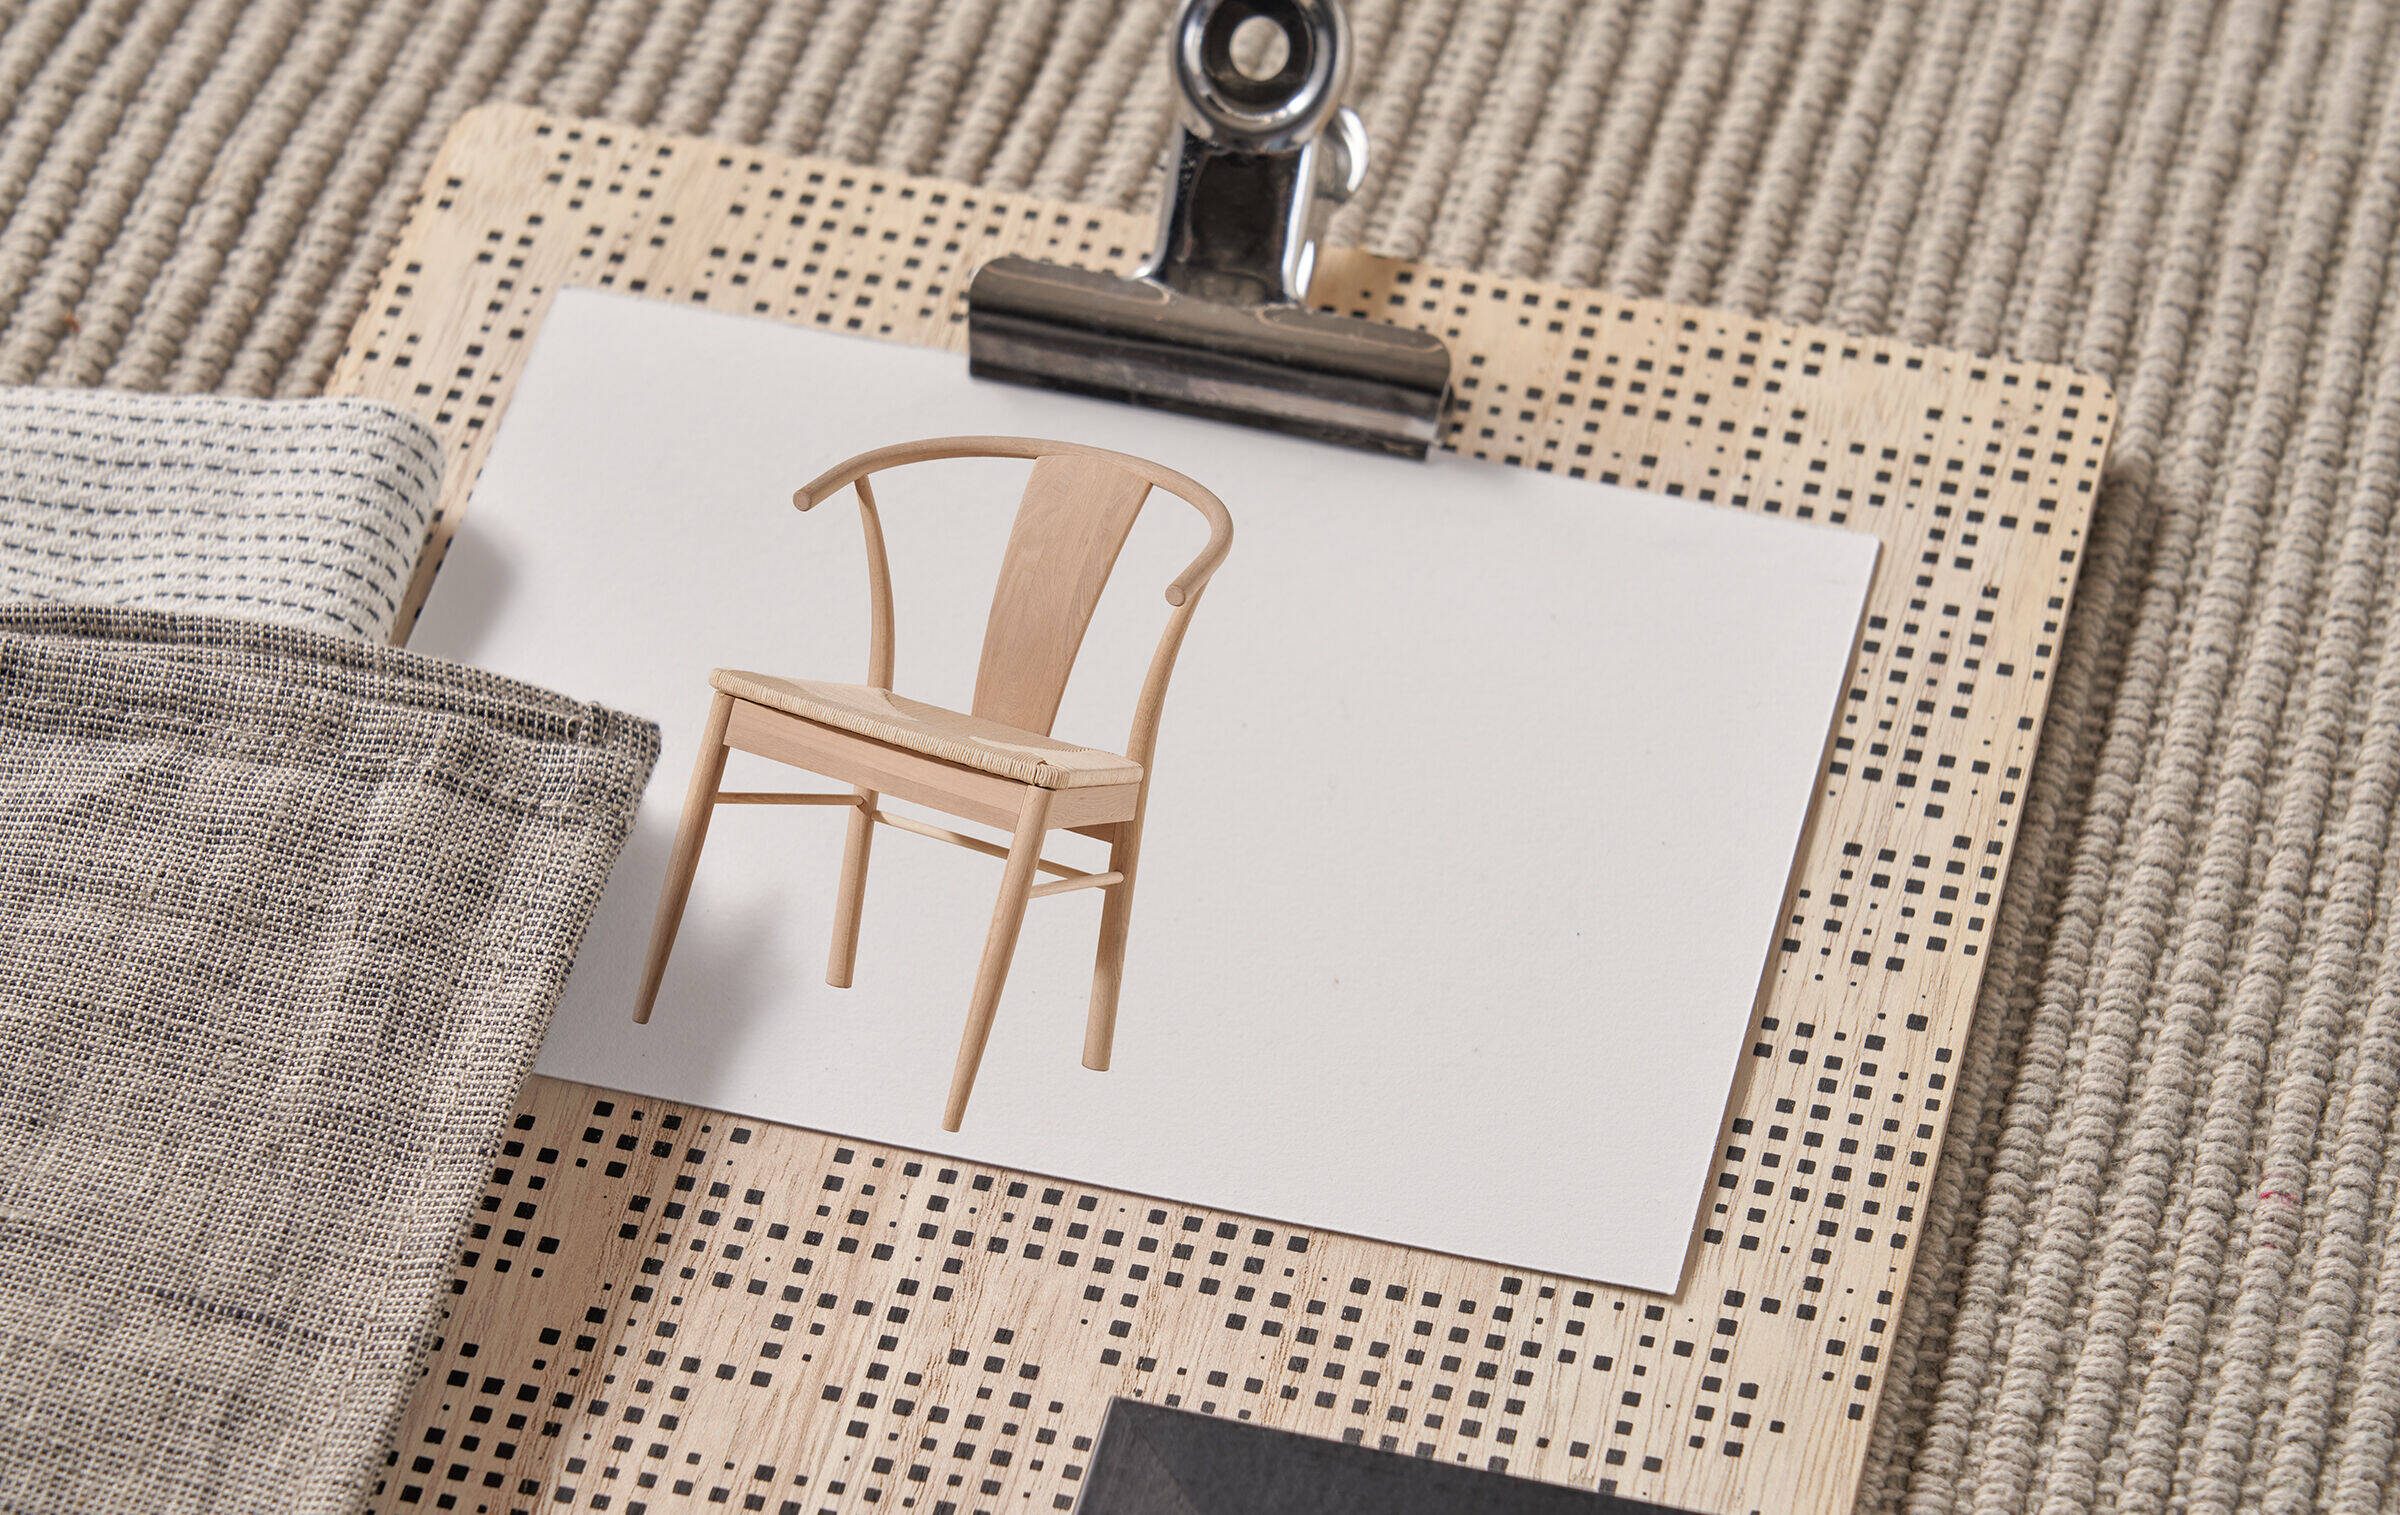 Auf einem Stück Stoff aus geriffelt gewebter Naturfaser liegt ein Klemmbrett aus Holz mit kleinem schwarz-cremefarbenem Quadratmuster. Auf das Brett ist ein Foto geklemmt, das einen beigefarbenen Stuhl zeigt.